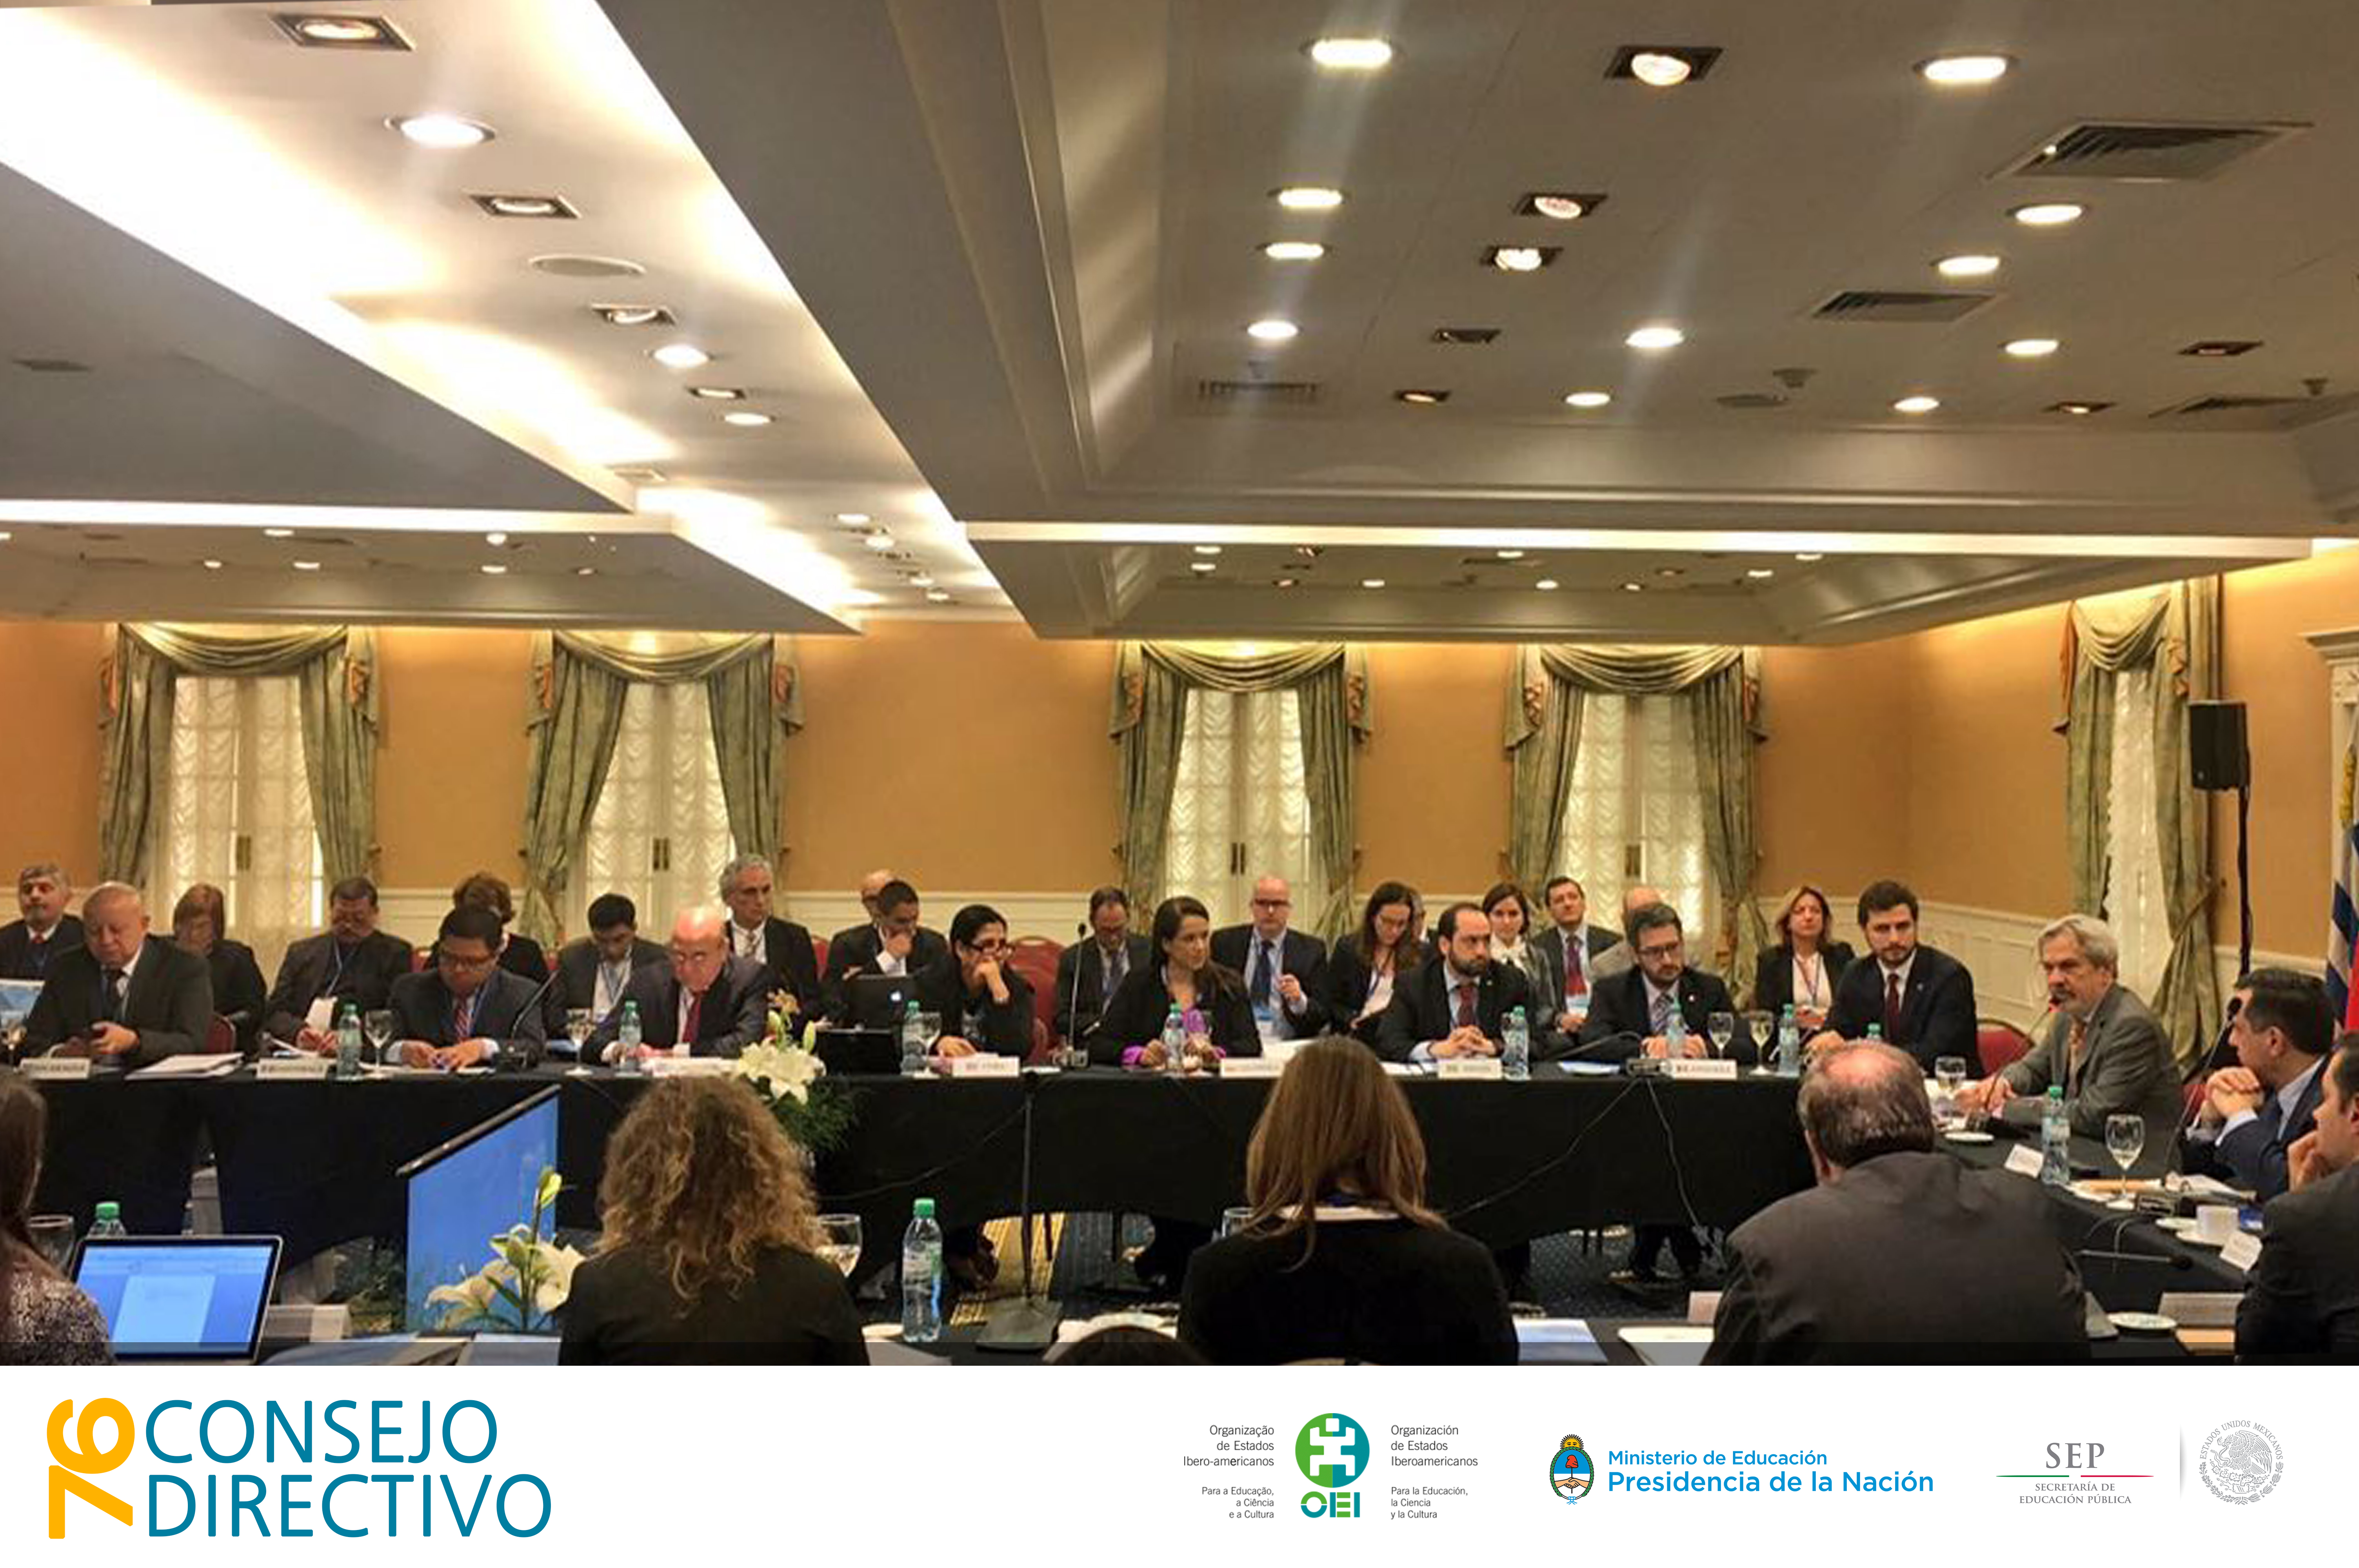 Acontece em Buenos Aires a 76ª Reunião do Conselho Diretivo da OEI